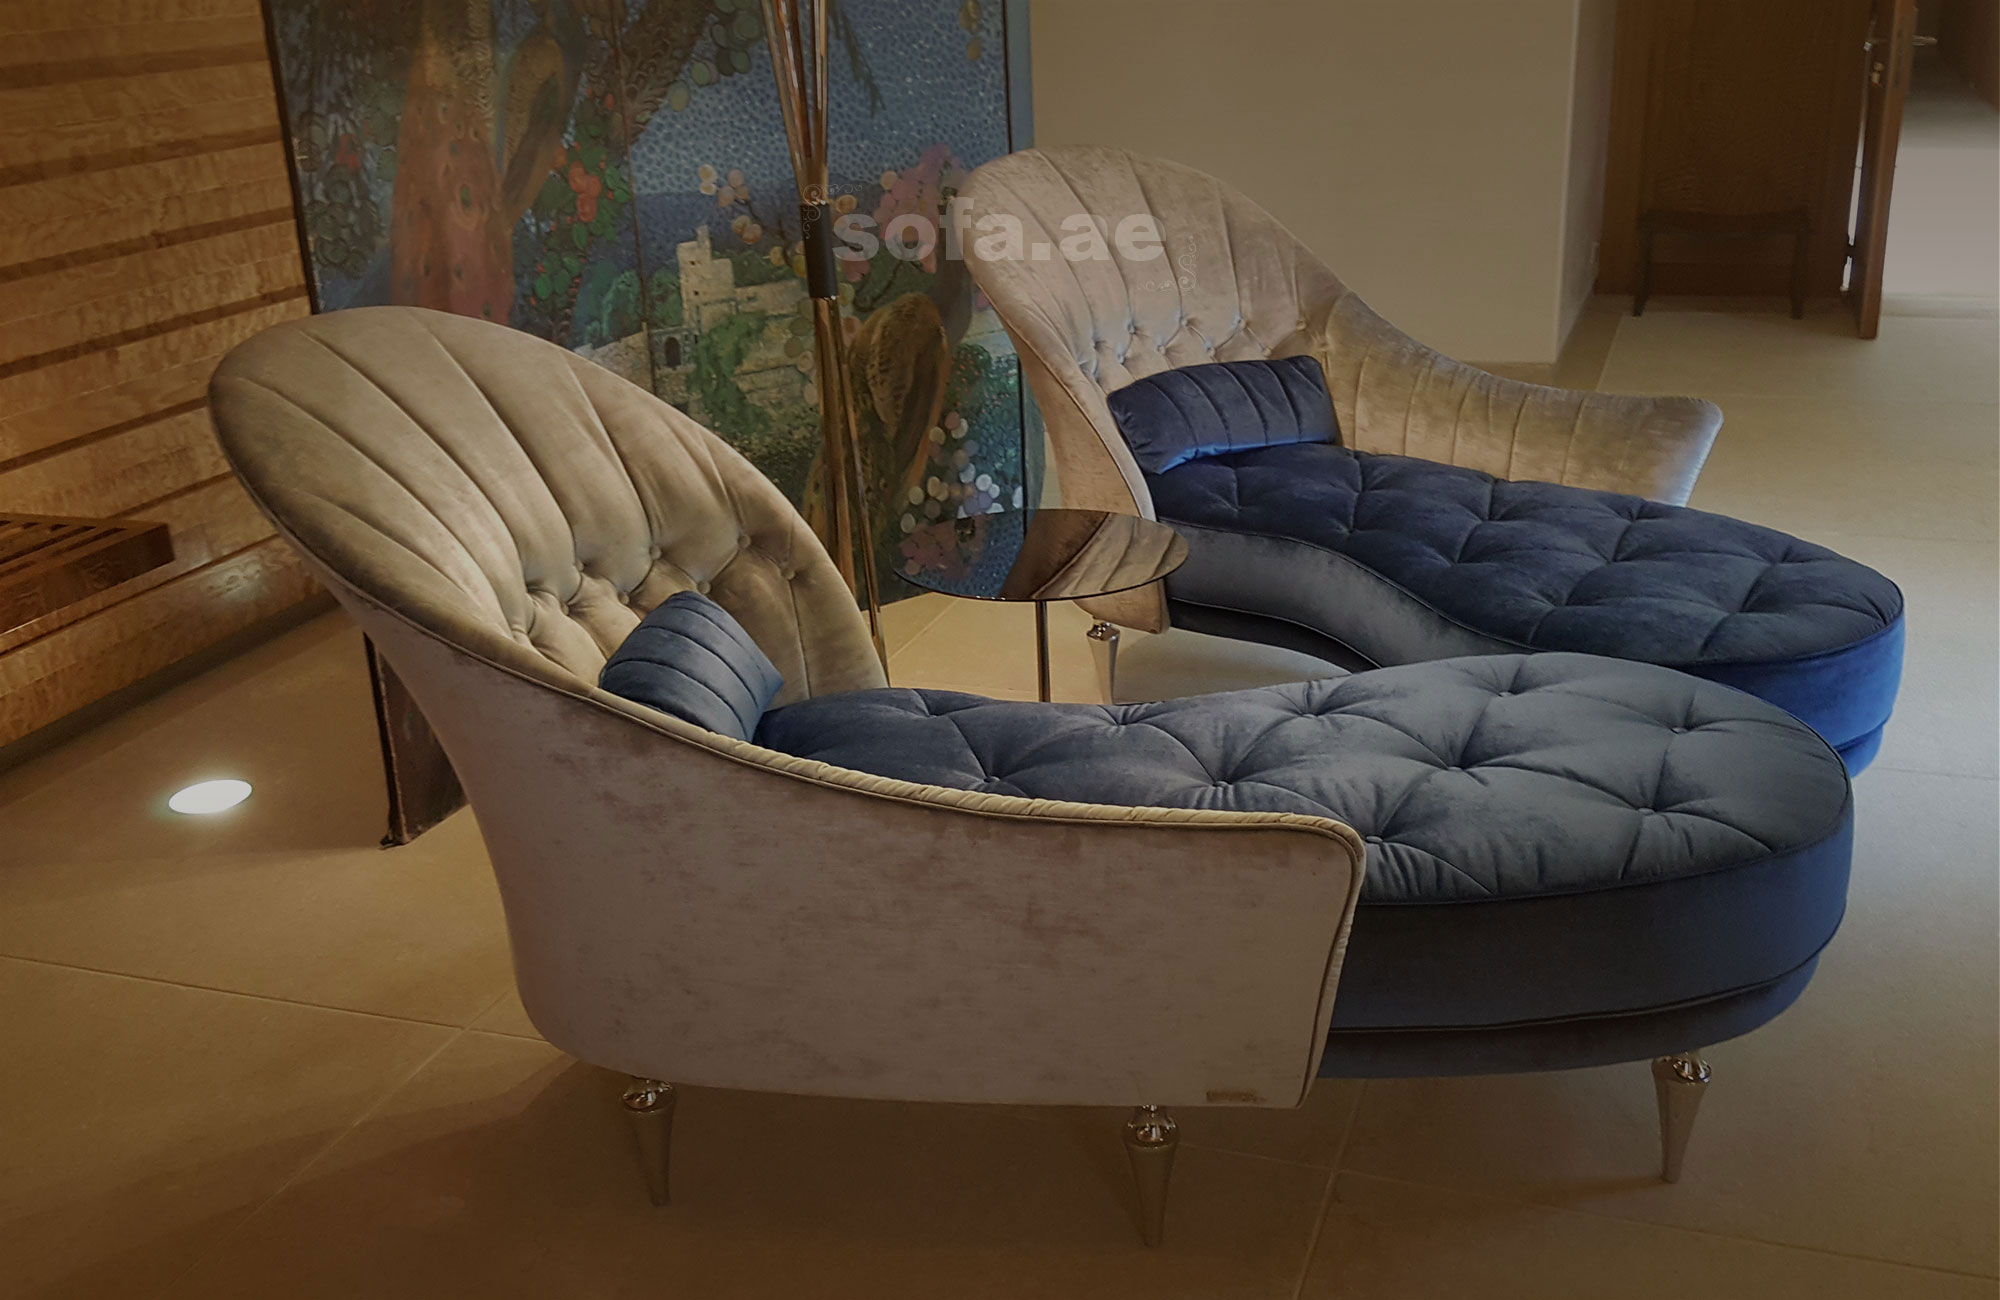 Sofa Repair & Upholstery Dubai | Leather Sofa Repair ...